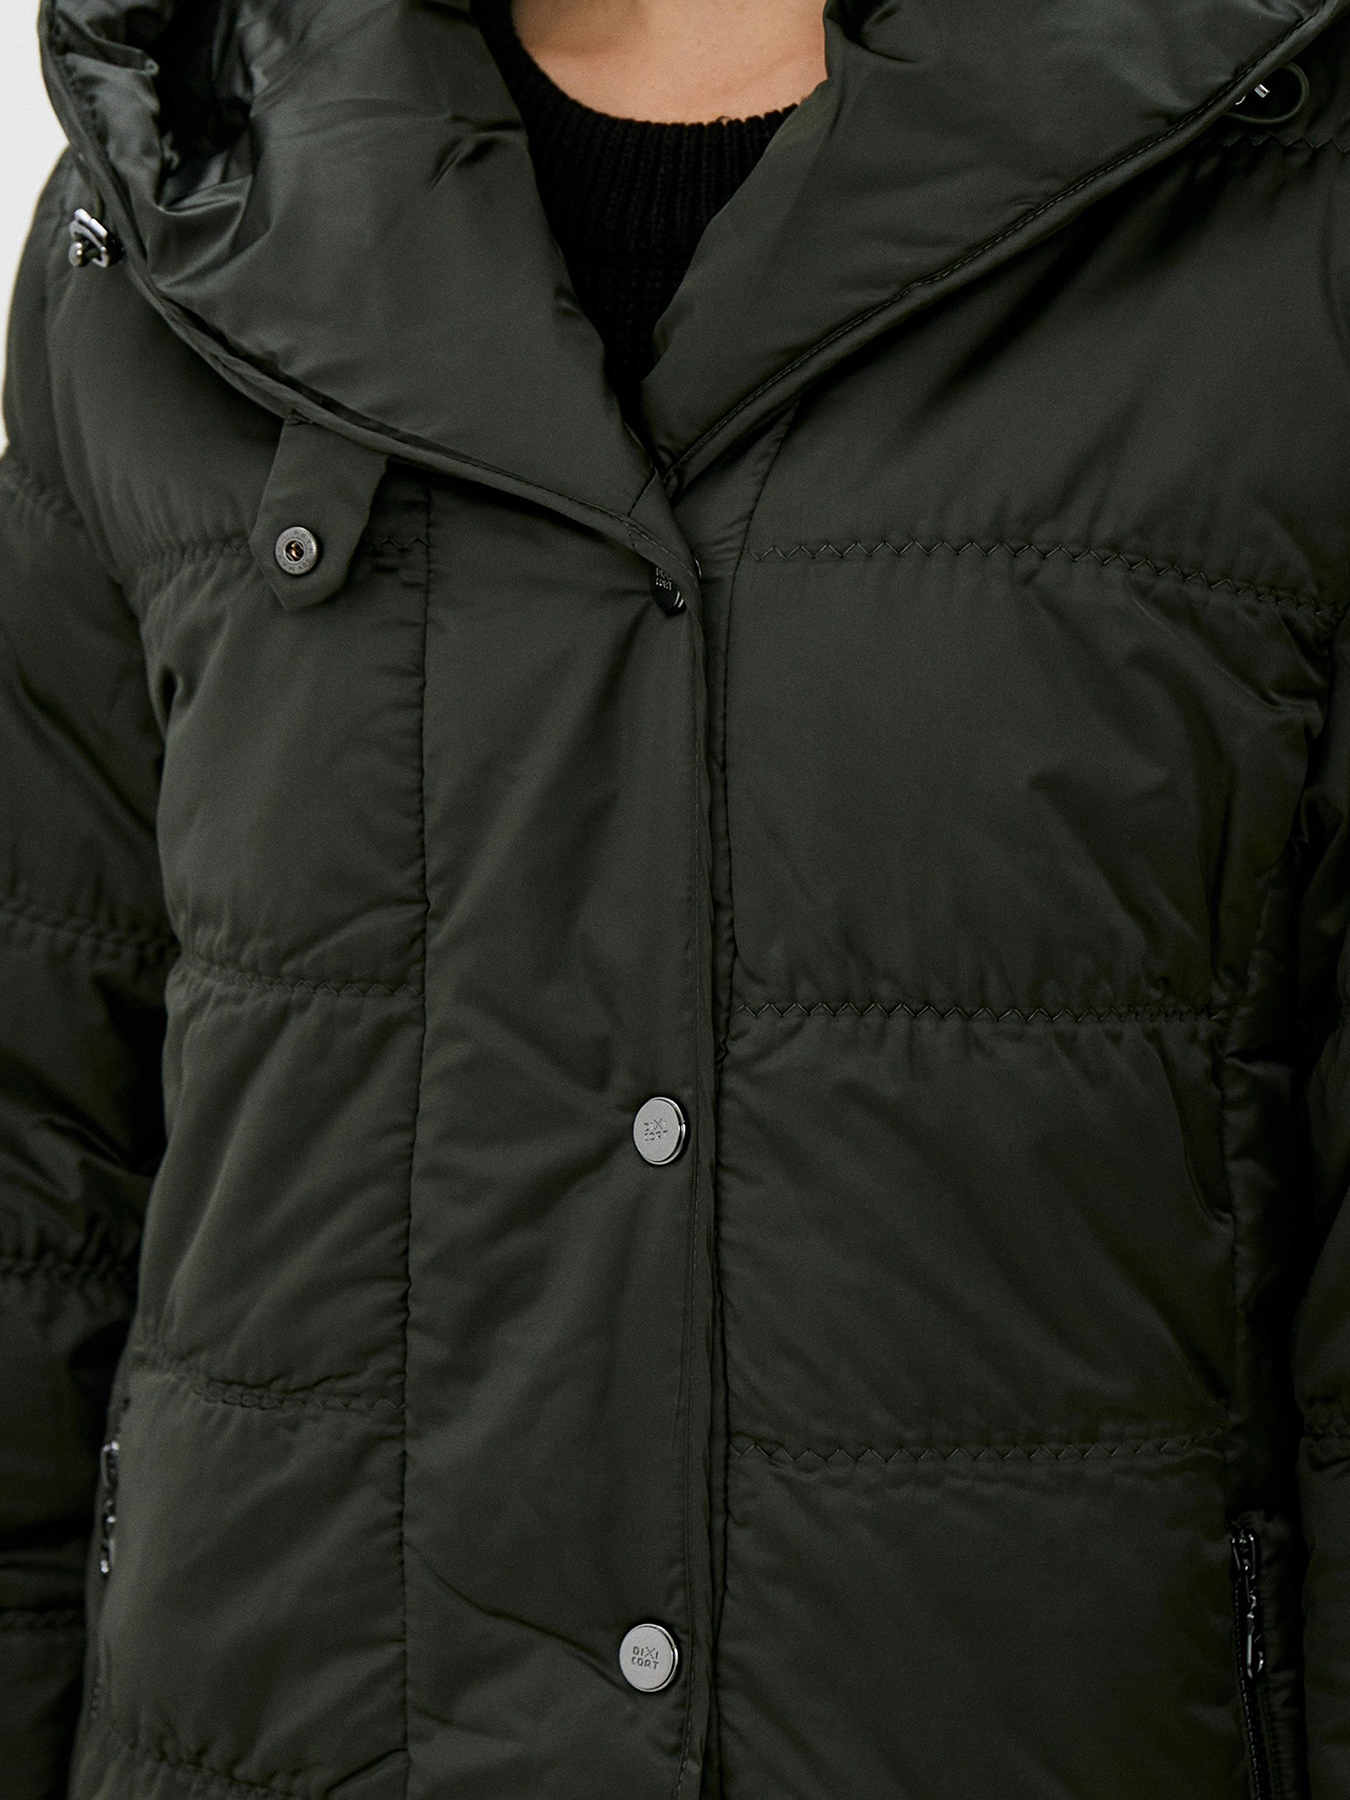 Куртка Dixi Coat 433591-018, цвет зеленый, размер 42 - фото 5